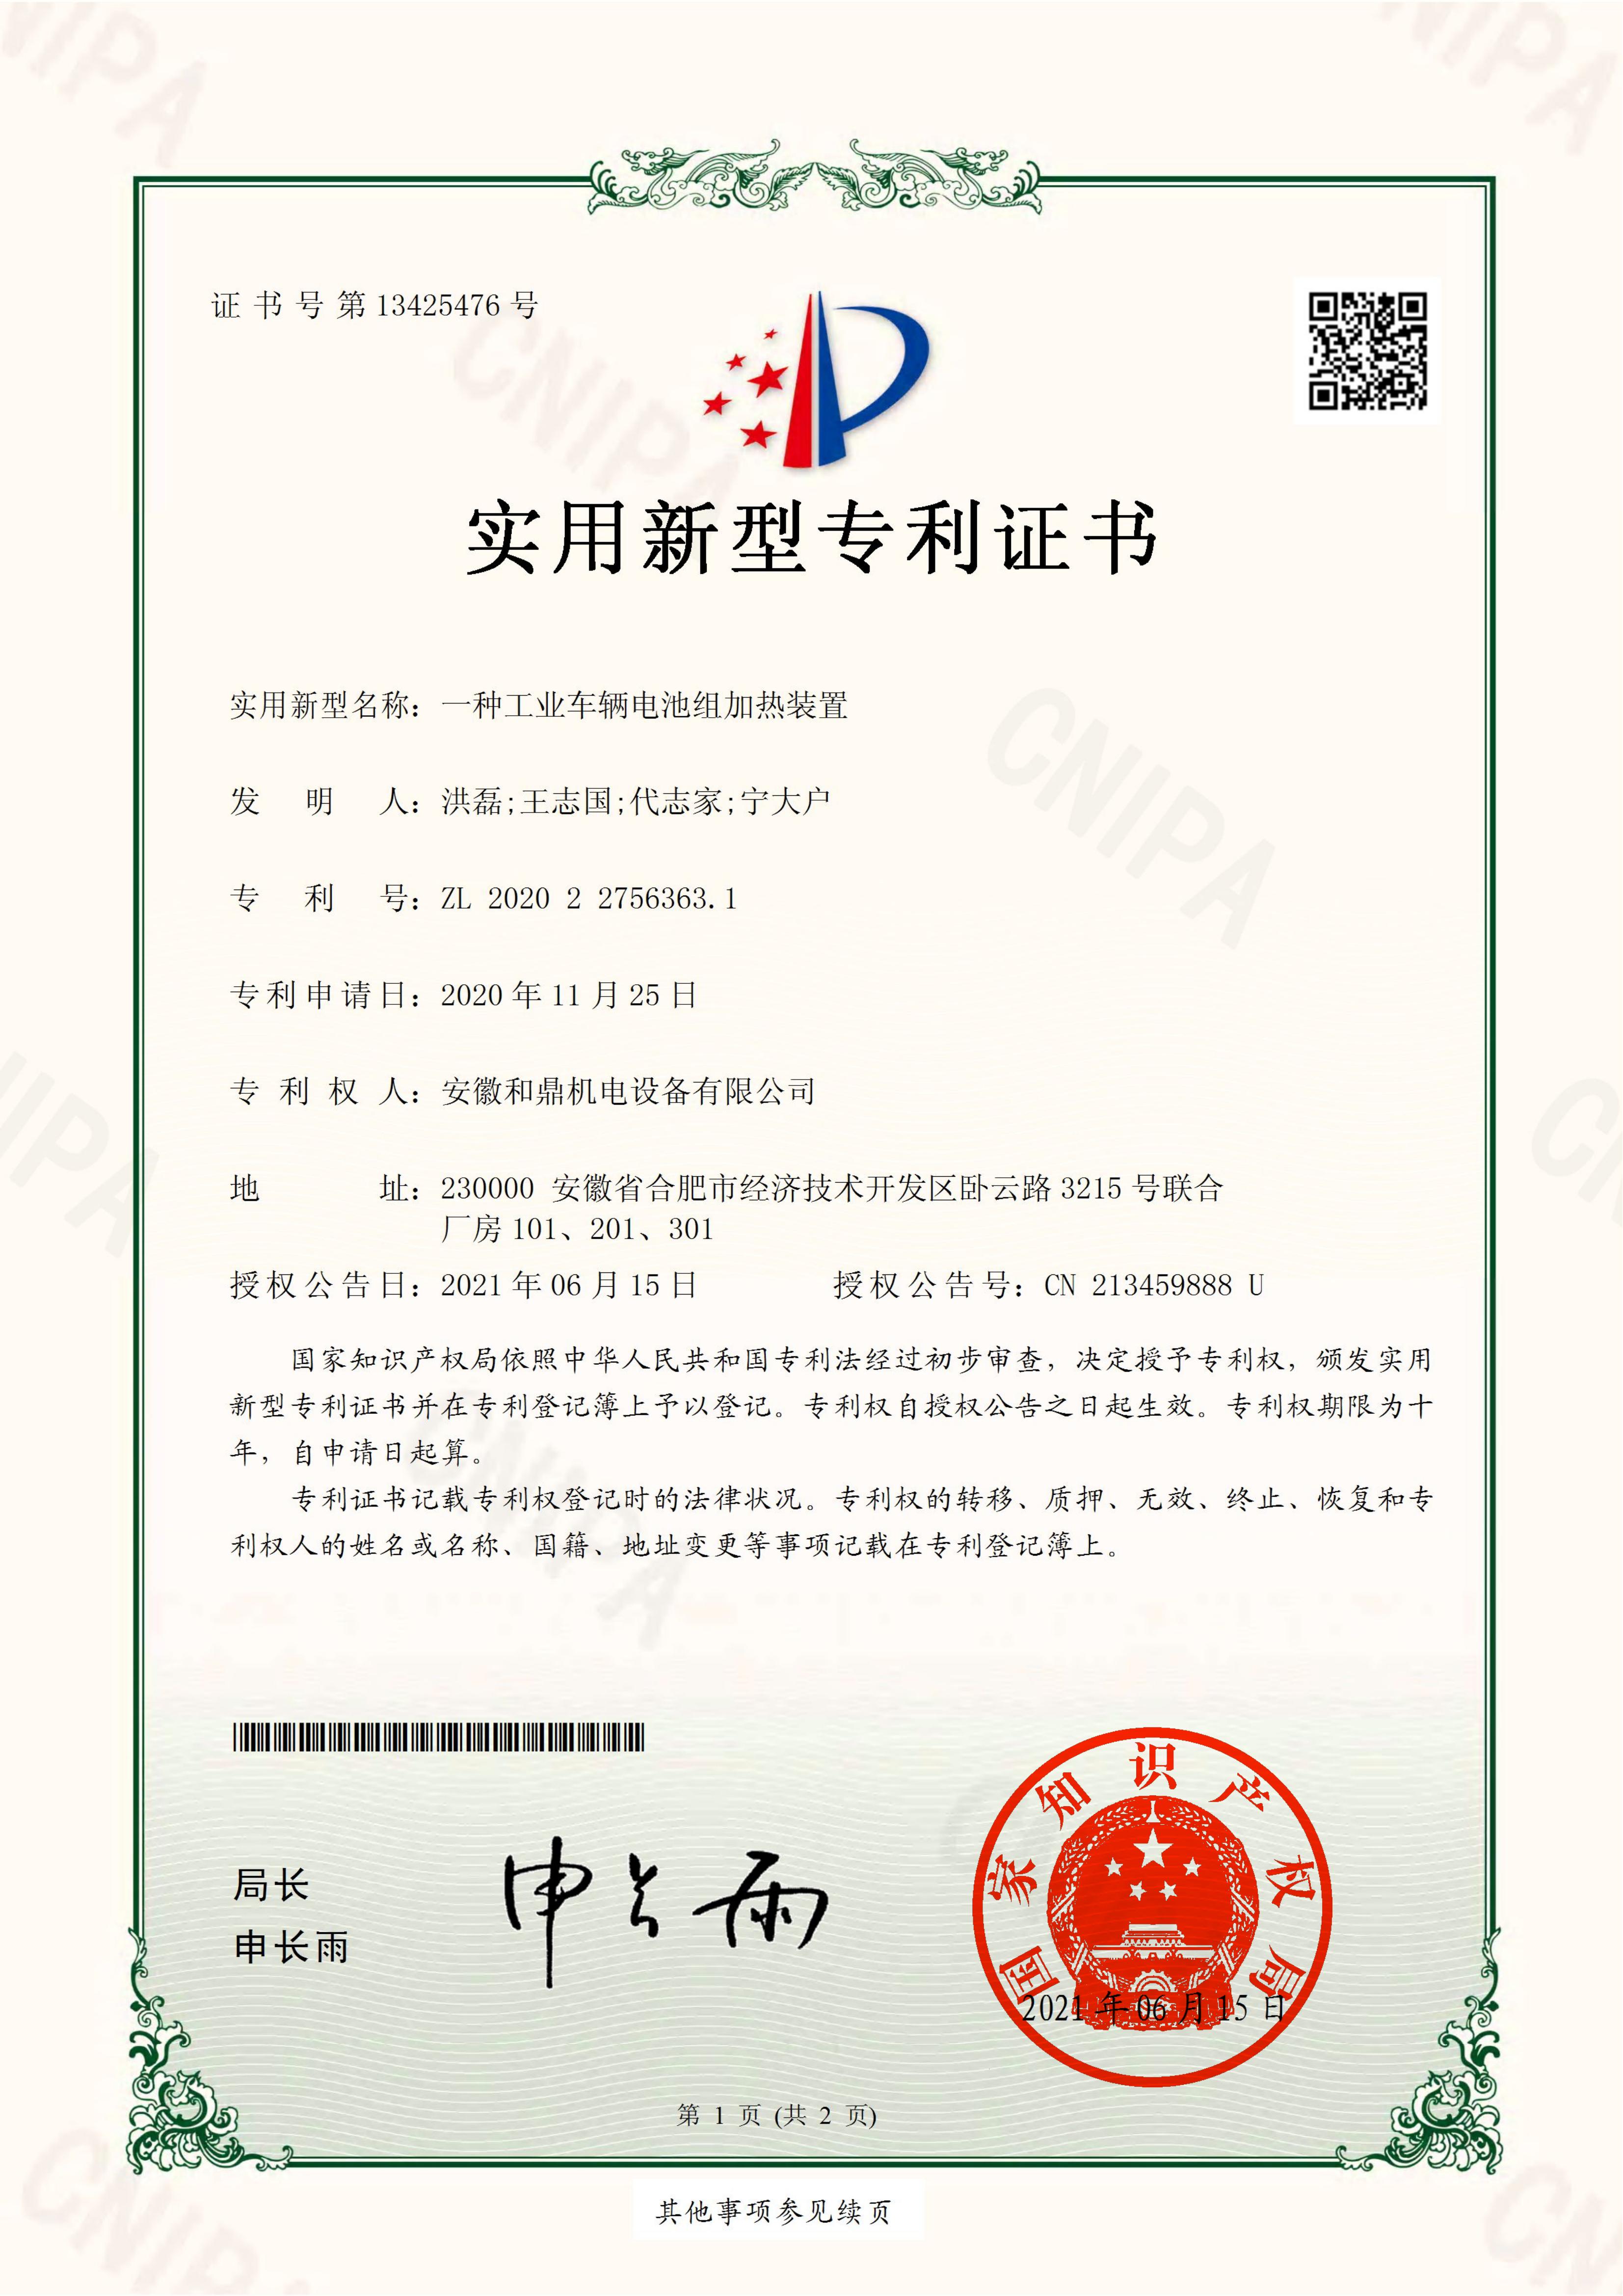 安徽和鼎机电设备有限企业2020227563631证书(2)(1)_00.jpg